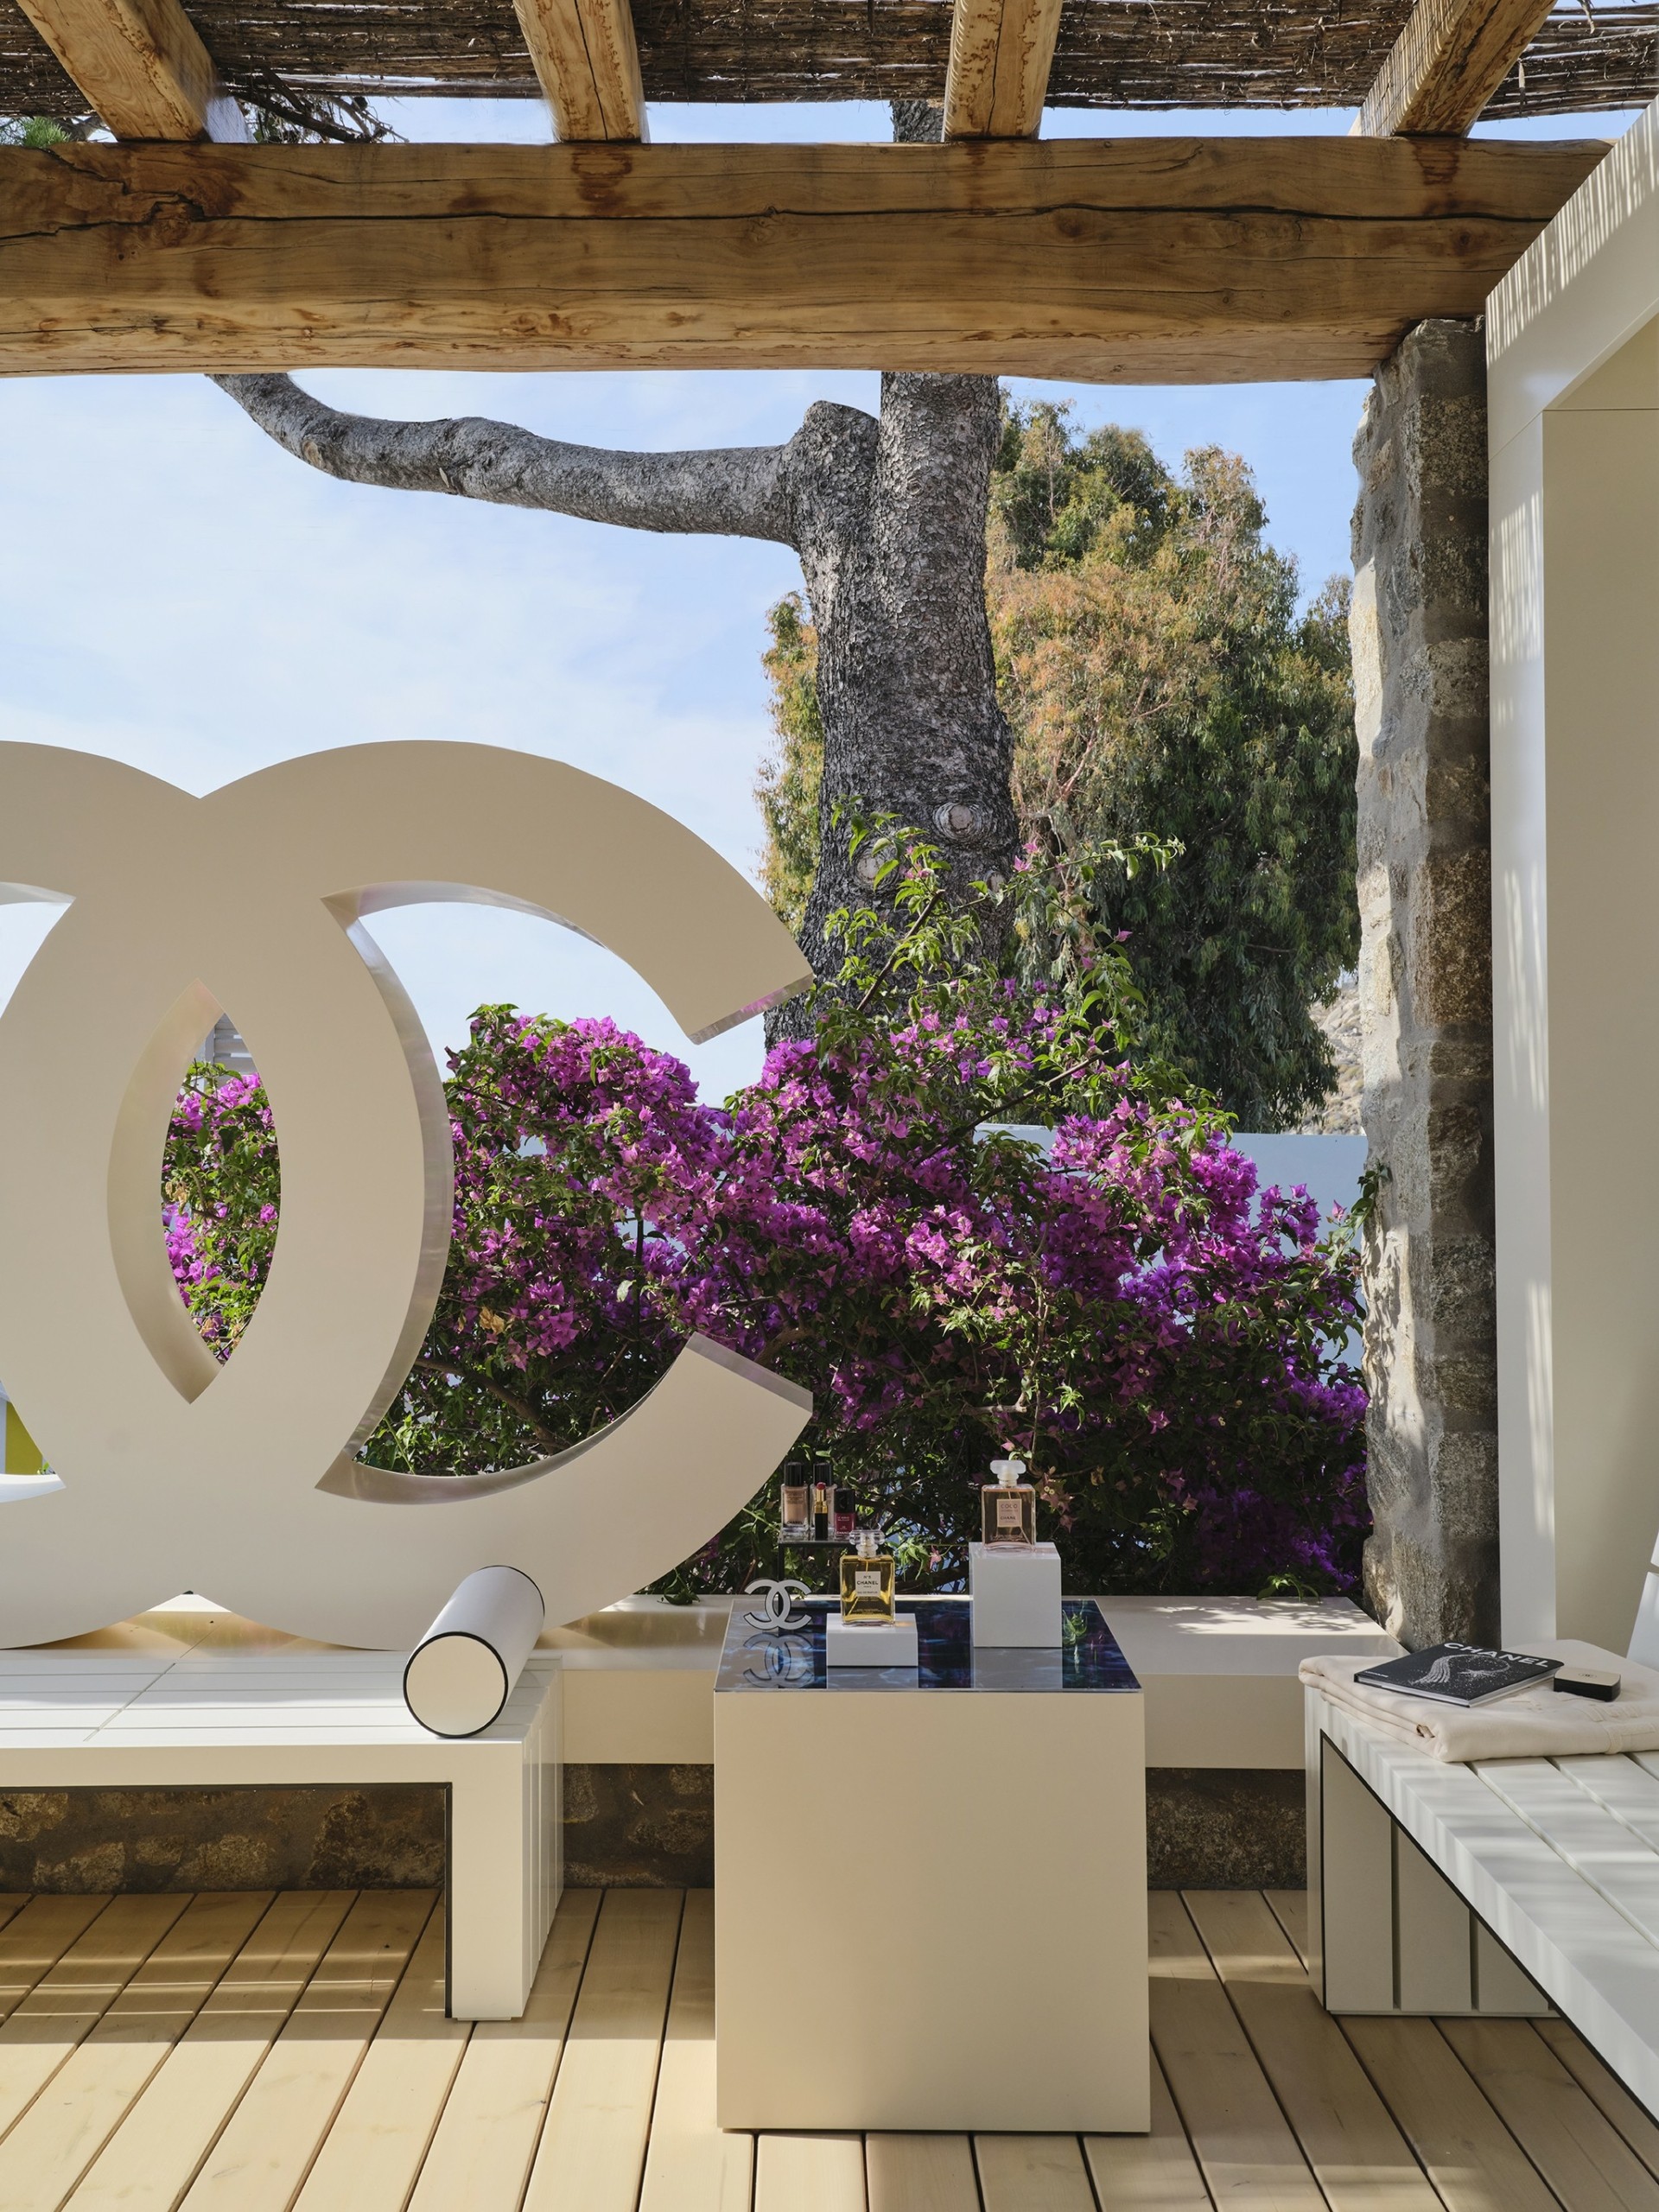 Άνοιξε η πρώτη μπουτίκ της Chanel στην Αθήνα – Δύο ακόμα στο Nammos Village στη Μύκονο